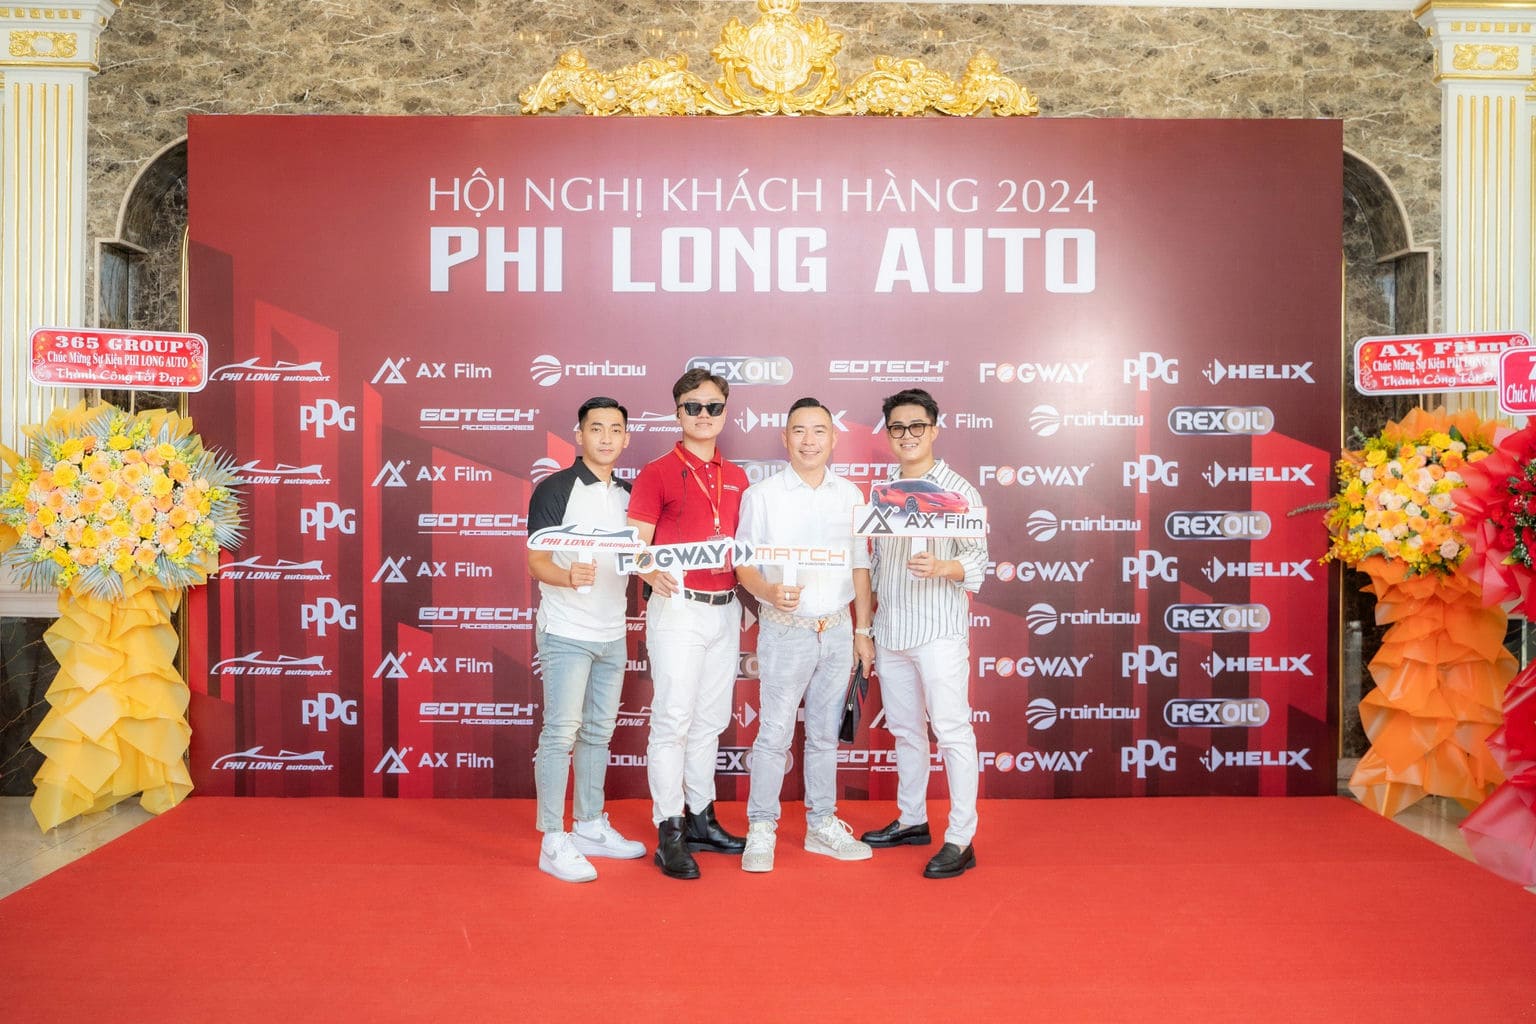 HOI NGHI KHACH HANG PHI LONG AUTO 2024 39 | Phi Long Auto